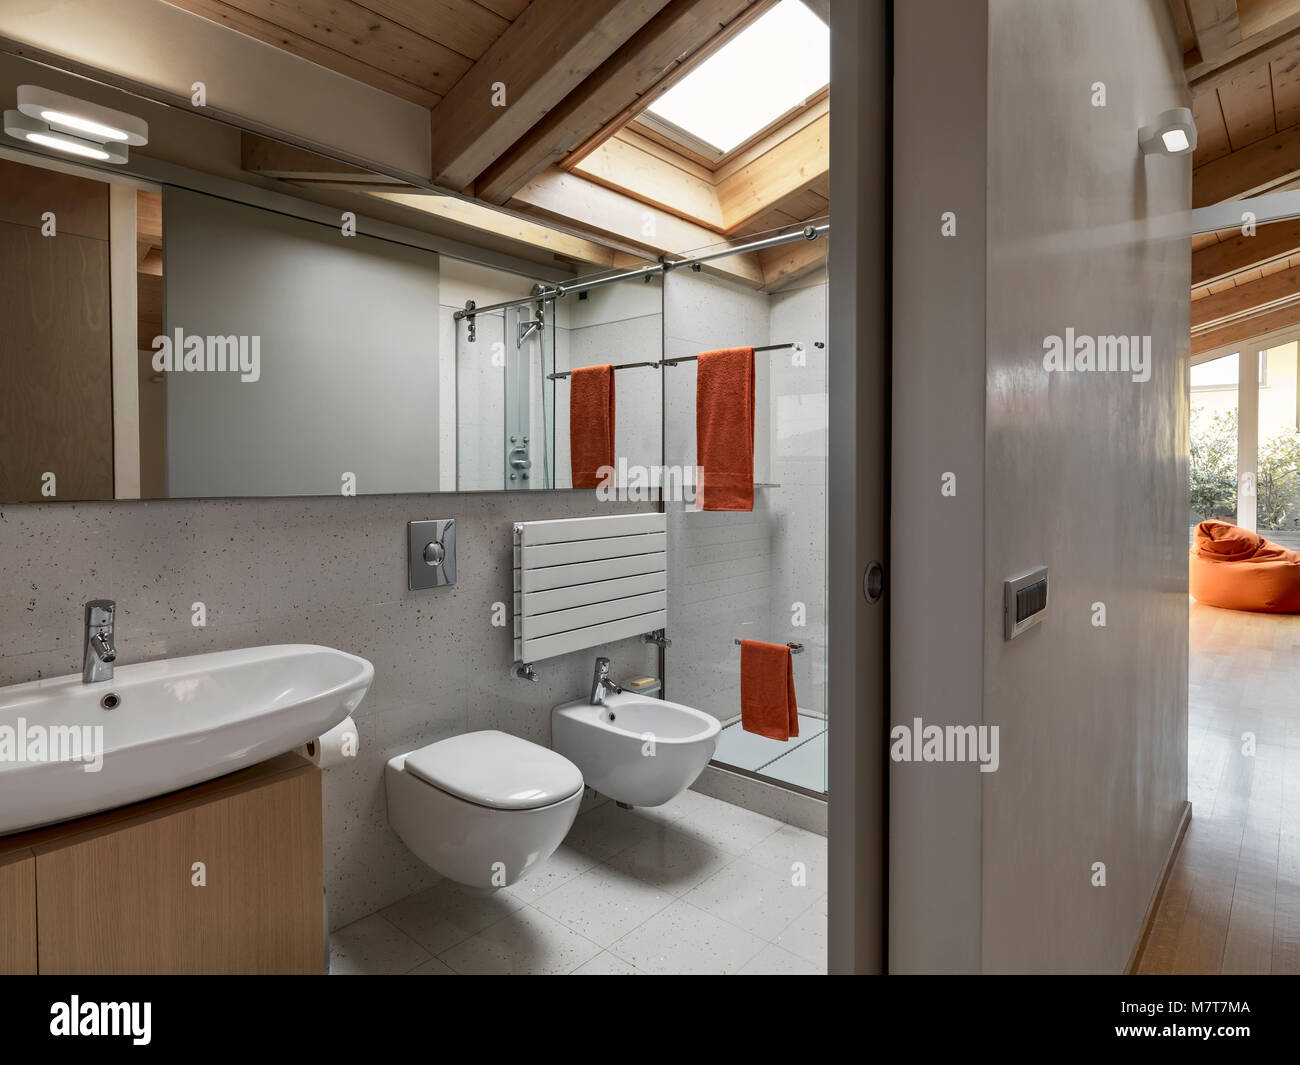 In primo piano il contatore top lavabo, wc e bidet in background sotto il lucernario il box doccia in vetro Foto Stock